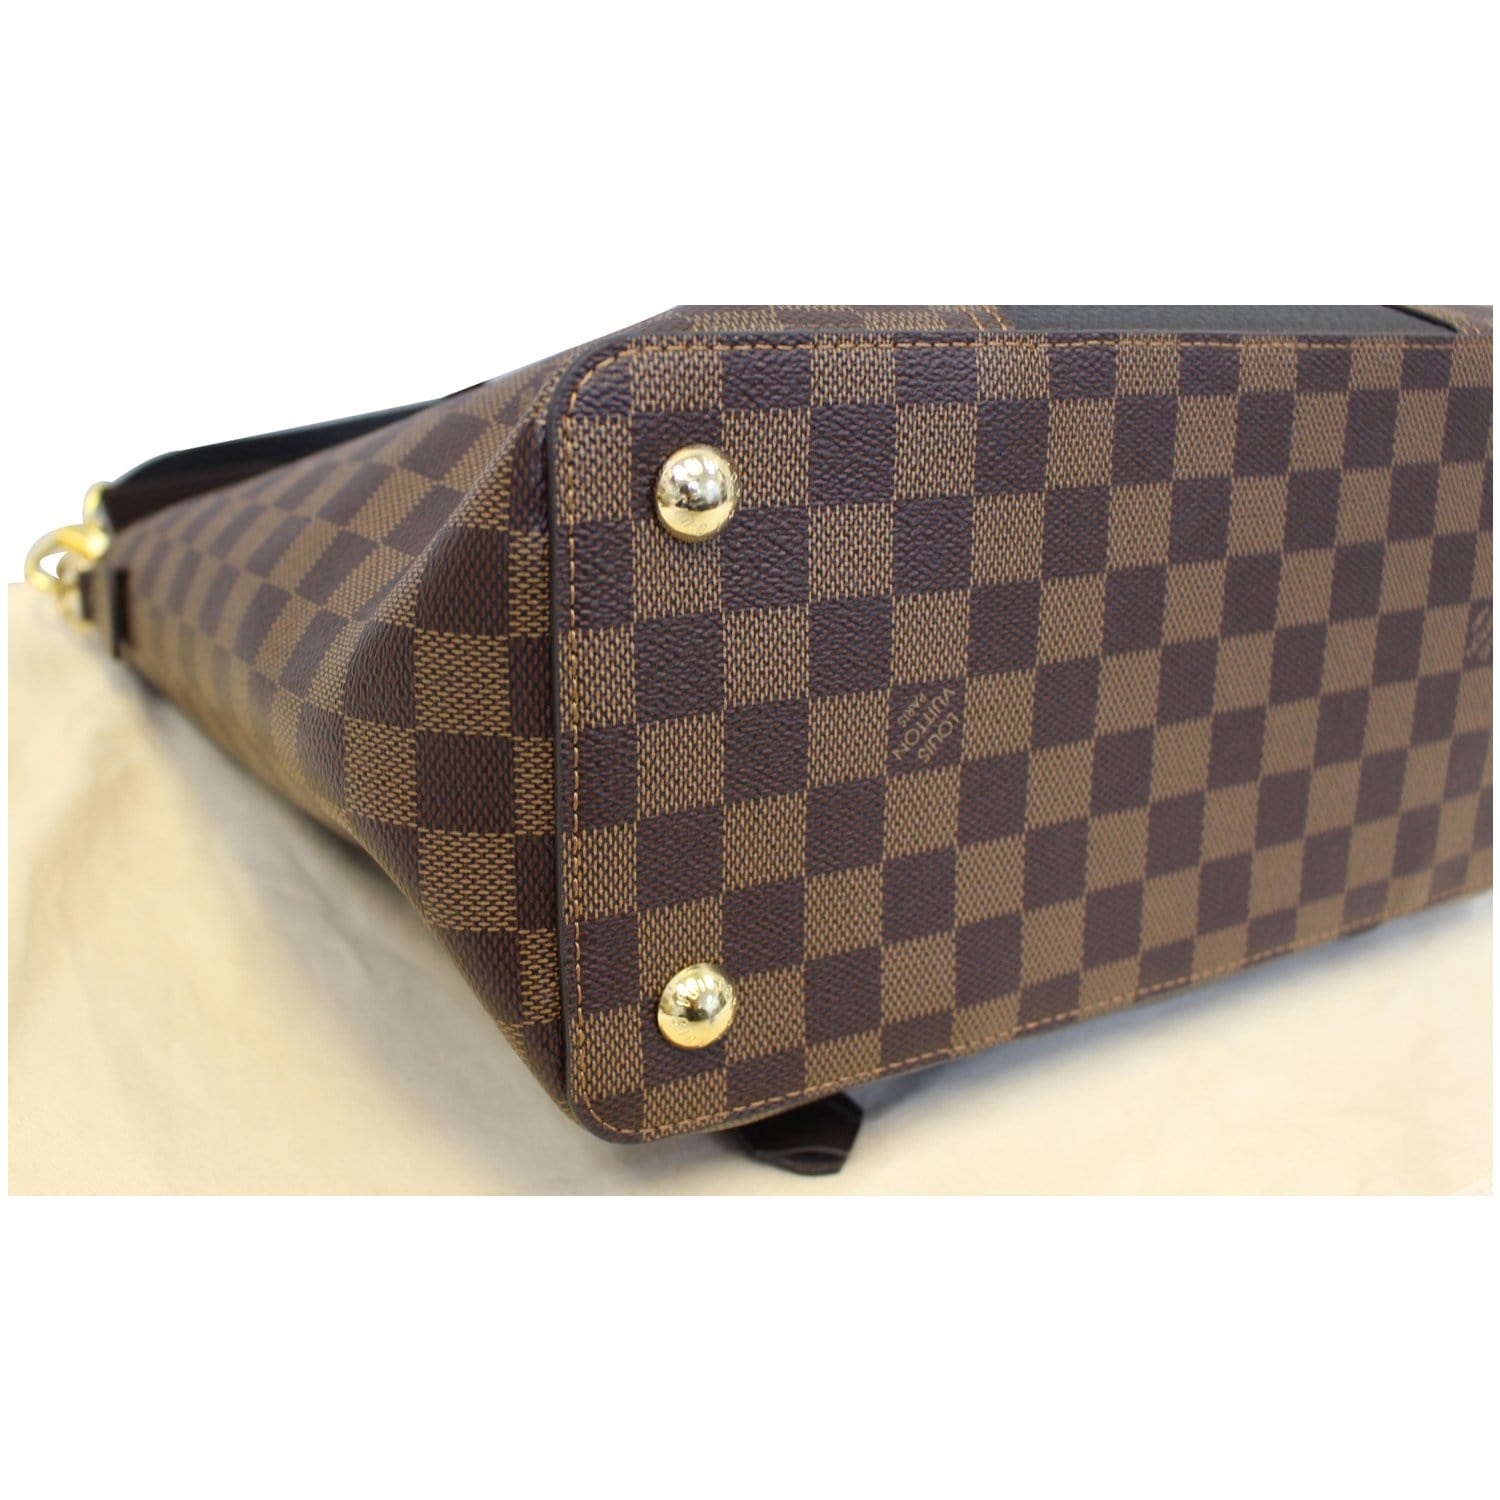 LOUIS VUITTON - Shoulder bag in ebony checkerboard canva…